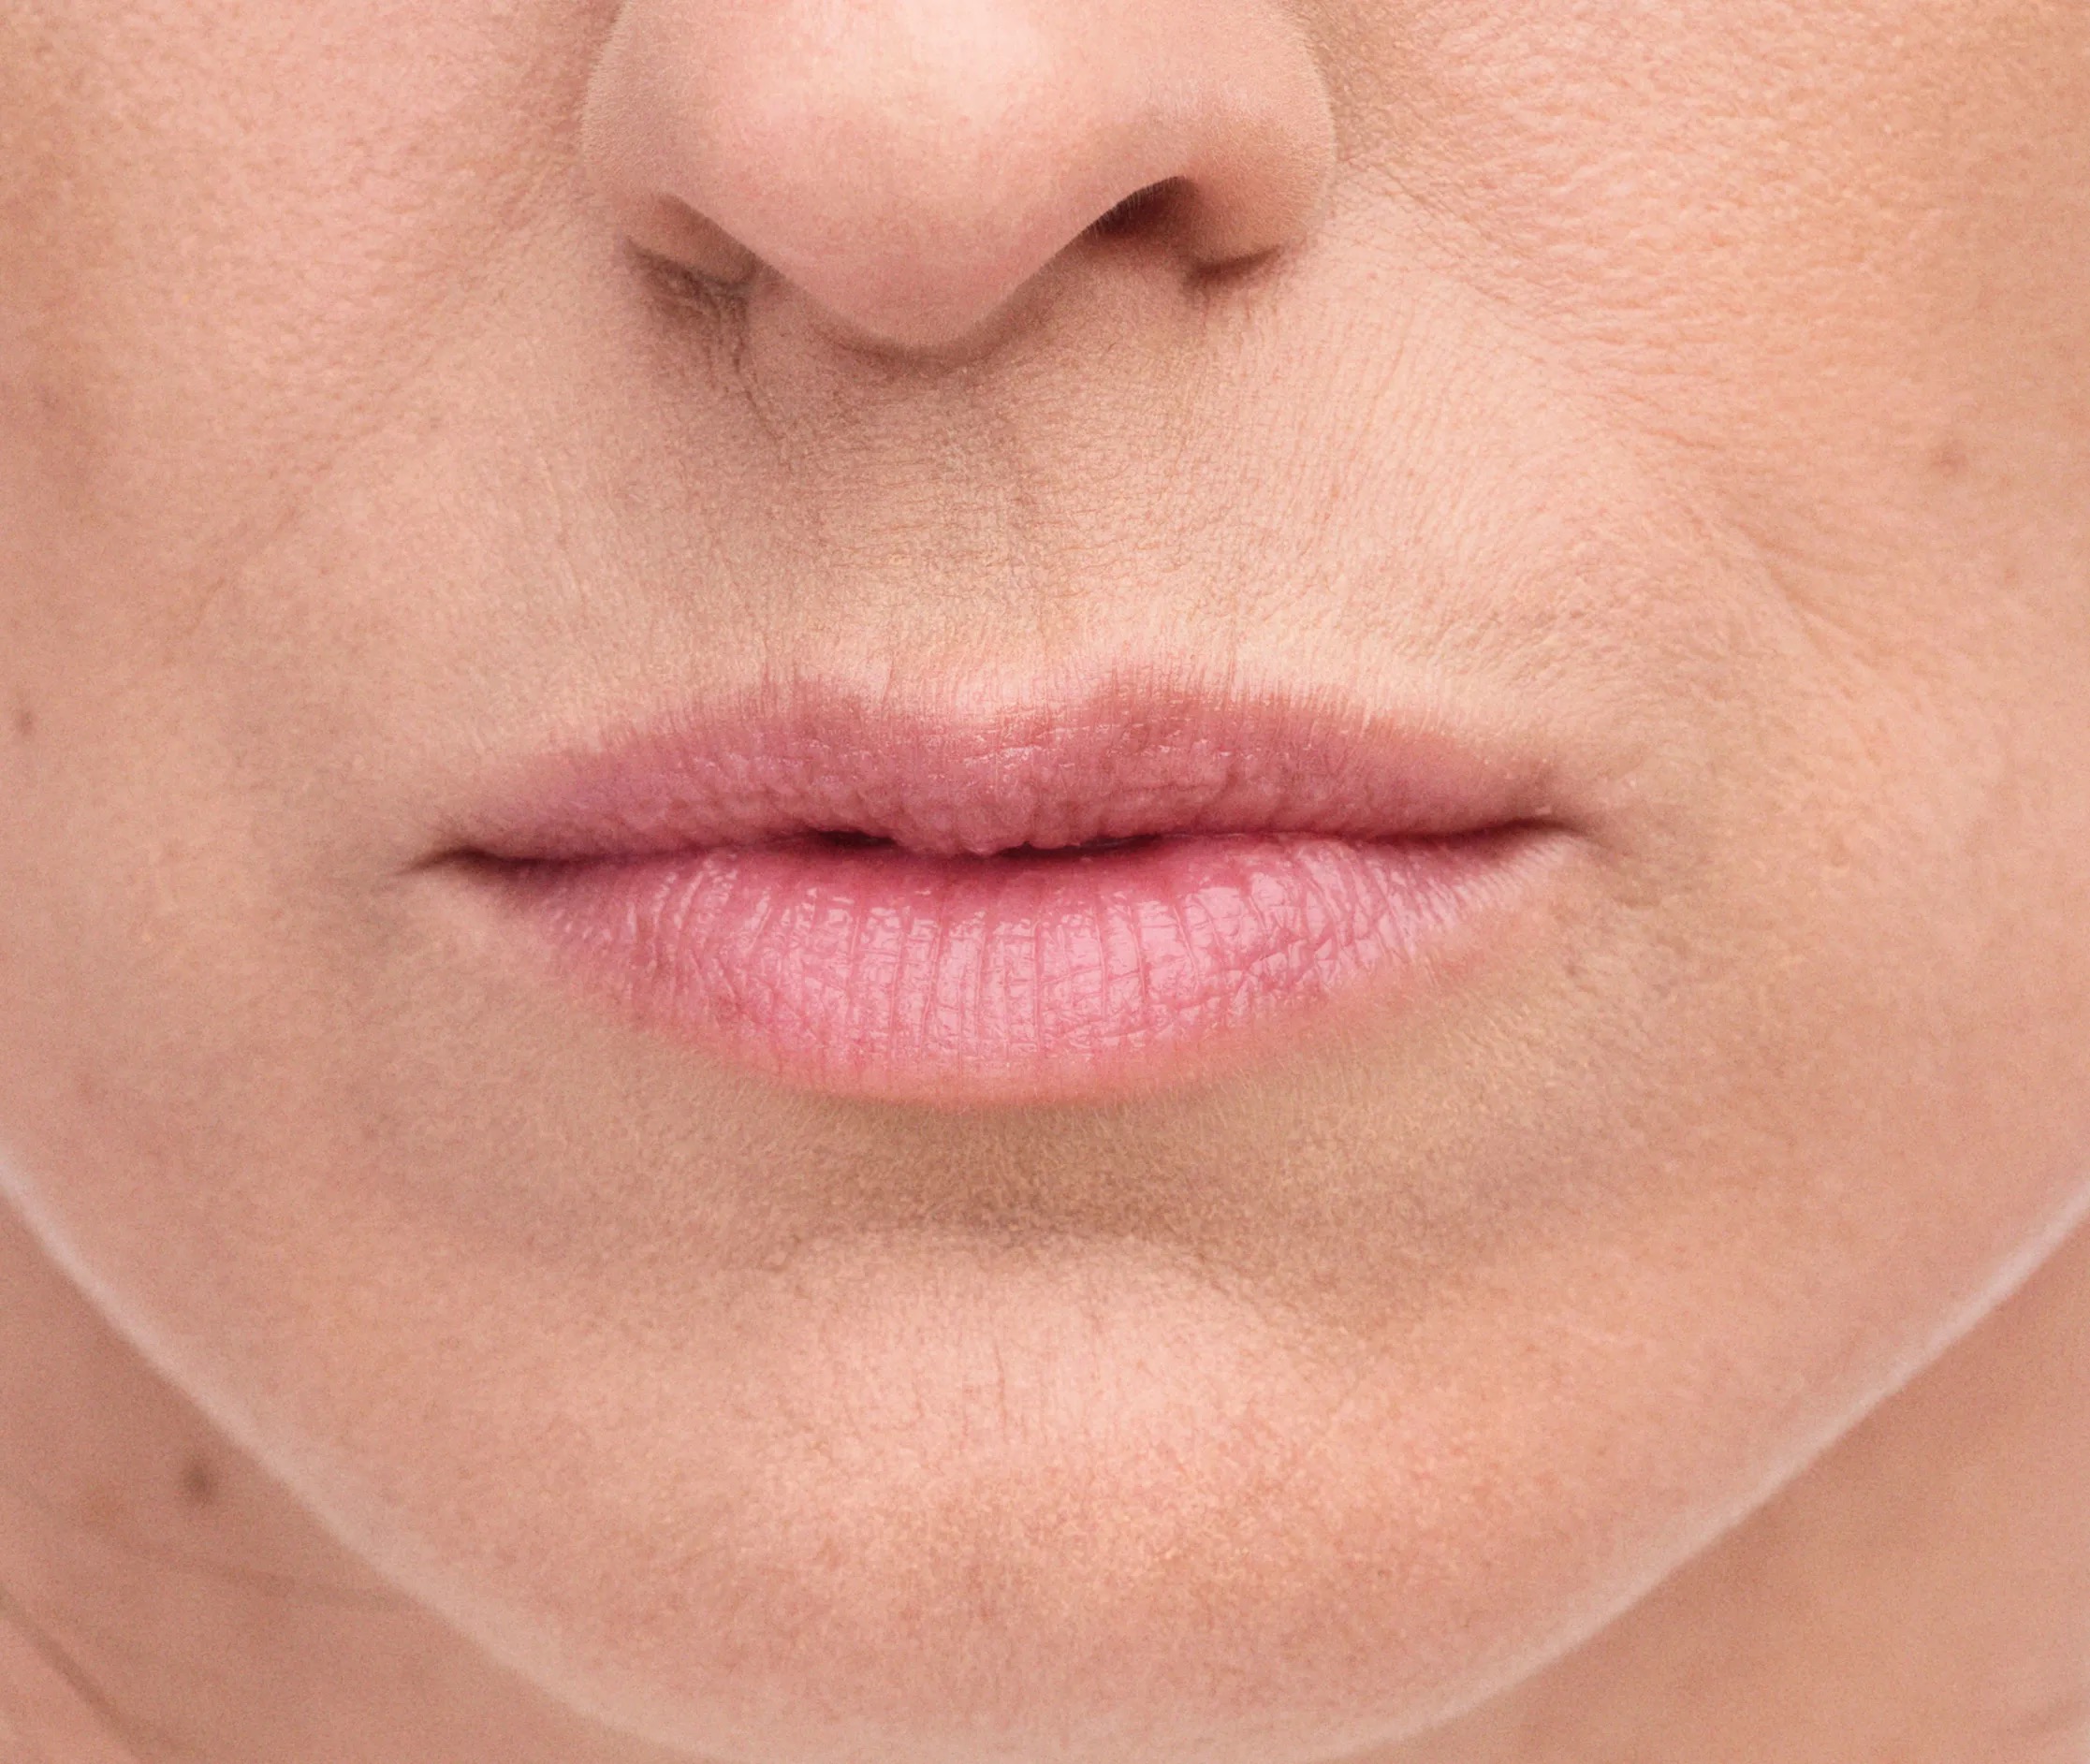 lip filler treatment for wrinkles York